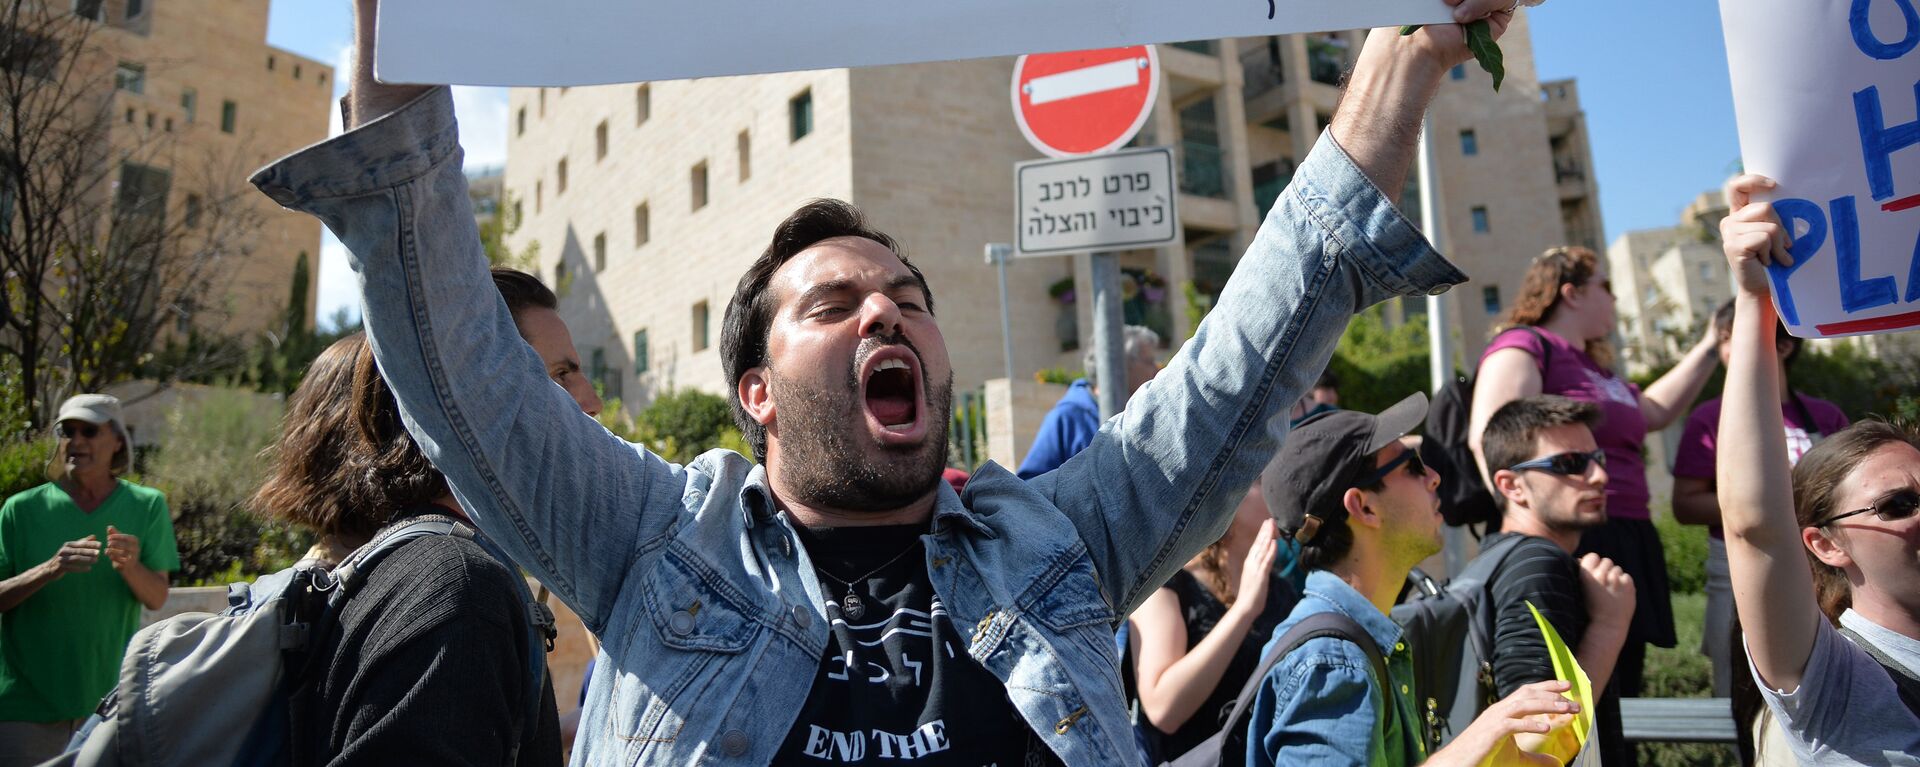 Protesti protiv perenosa posolstva SShA iz Tel-Aviva v Iyerusalim - Sputnik O‘zbekiston, 1920, 16.05.2018